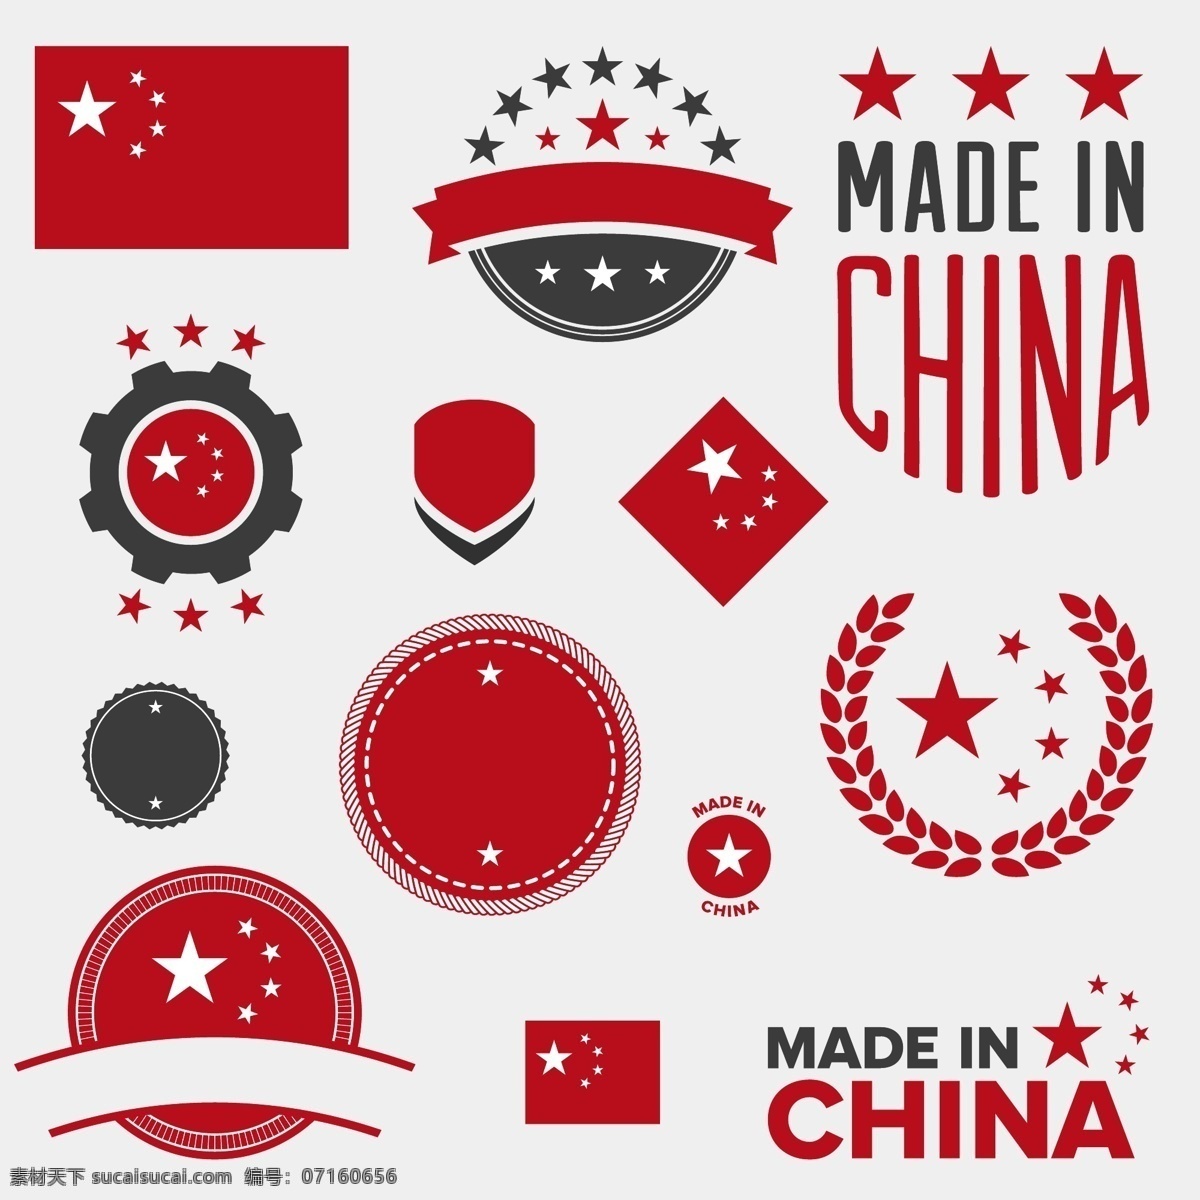 中国 元素 图标 矢量 中国元素 矢量素材 国旗 五角星 星星 中国制造 文化艺术素材 标志图标 其他图标